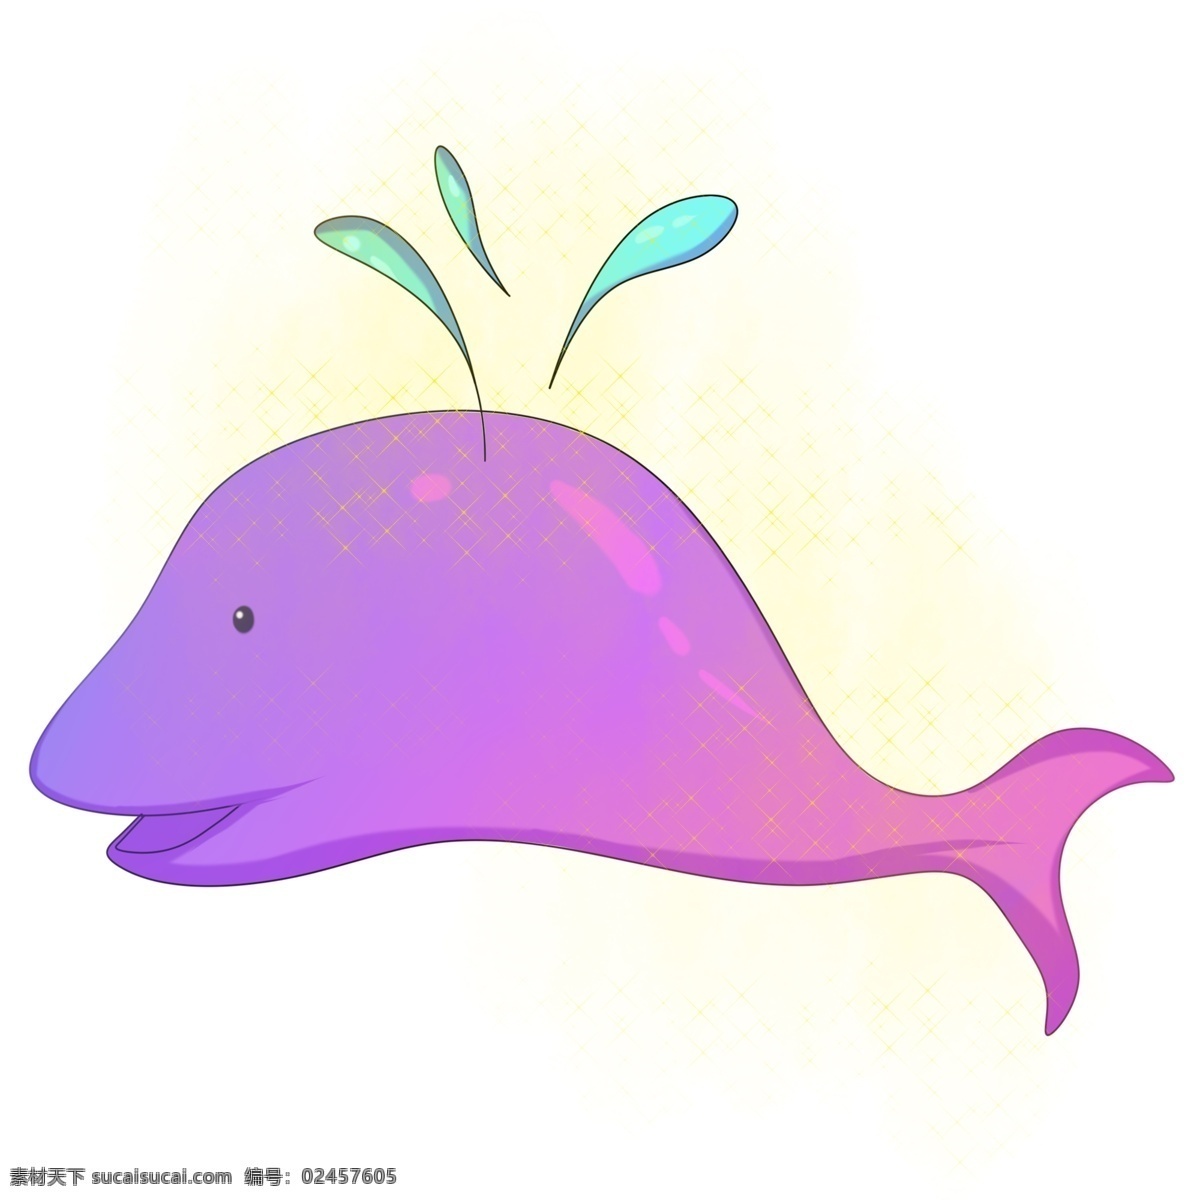 卡通 手绘 鲸鱼 喷水 插画 海洋 大海 哺乳动物 游泳 潜水 呼吸 悠闲自在 蓝色 粉色 浪漫 梦幻 巨大 可爱